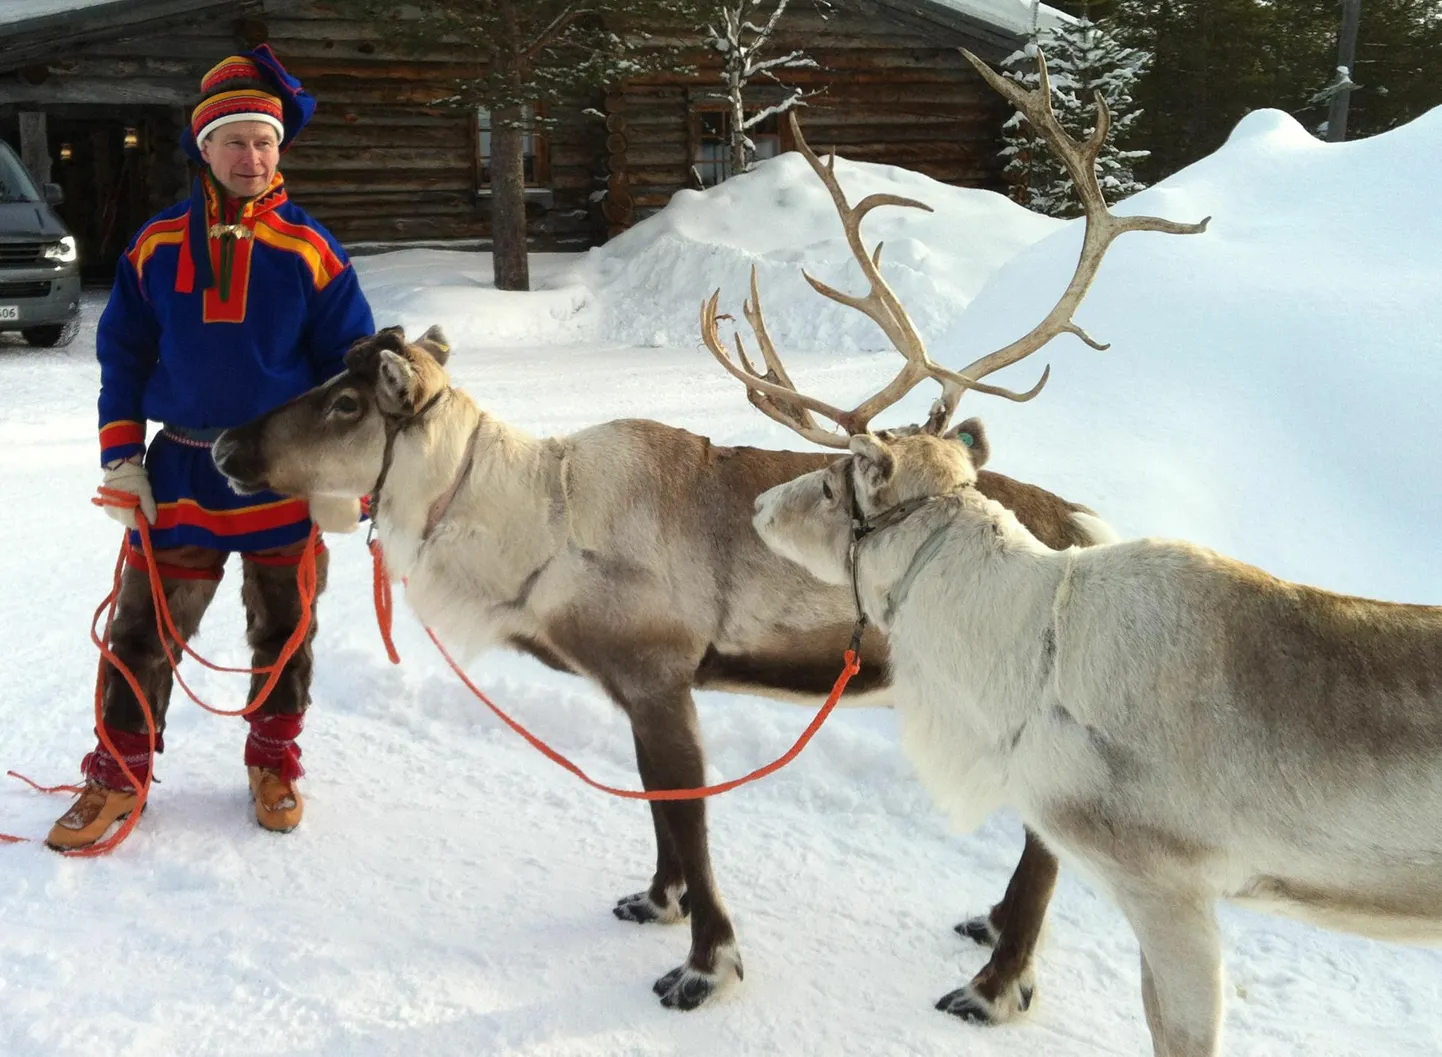 Soome traditsioonilises riietuses saami Lapimaal Saariselkal.